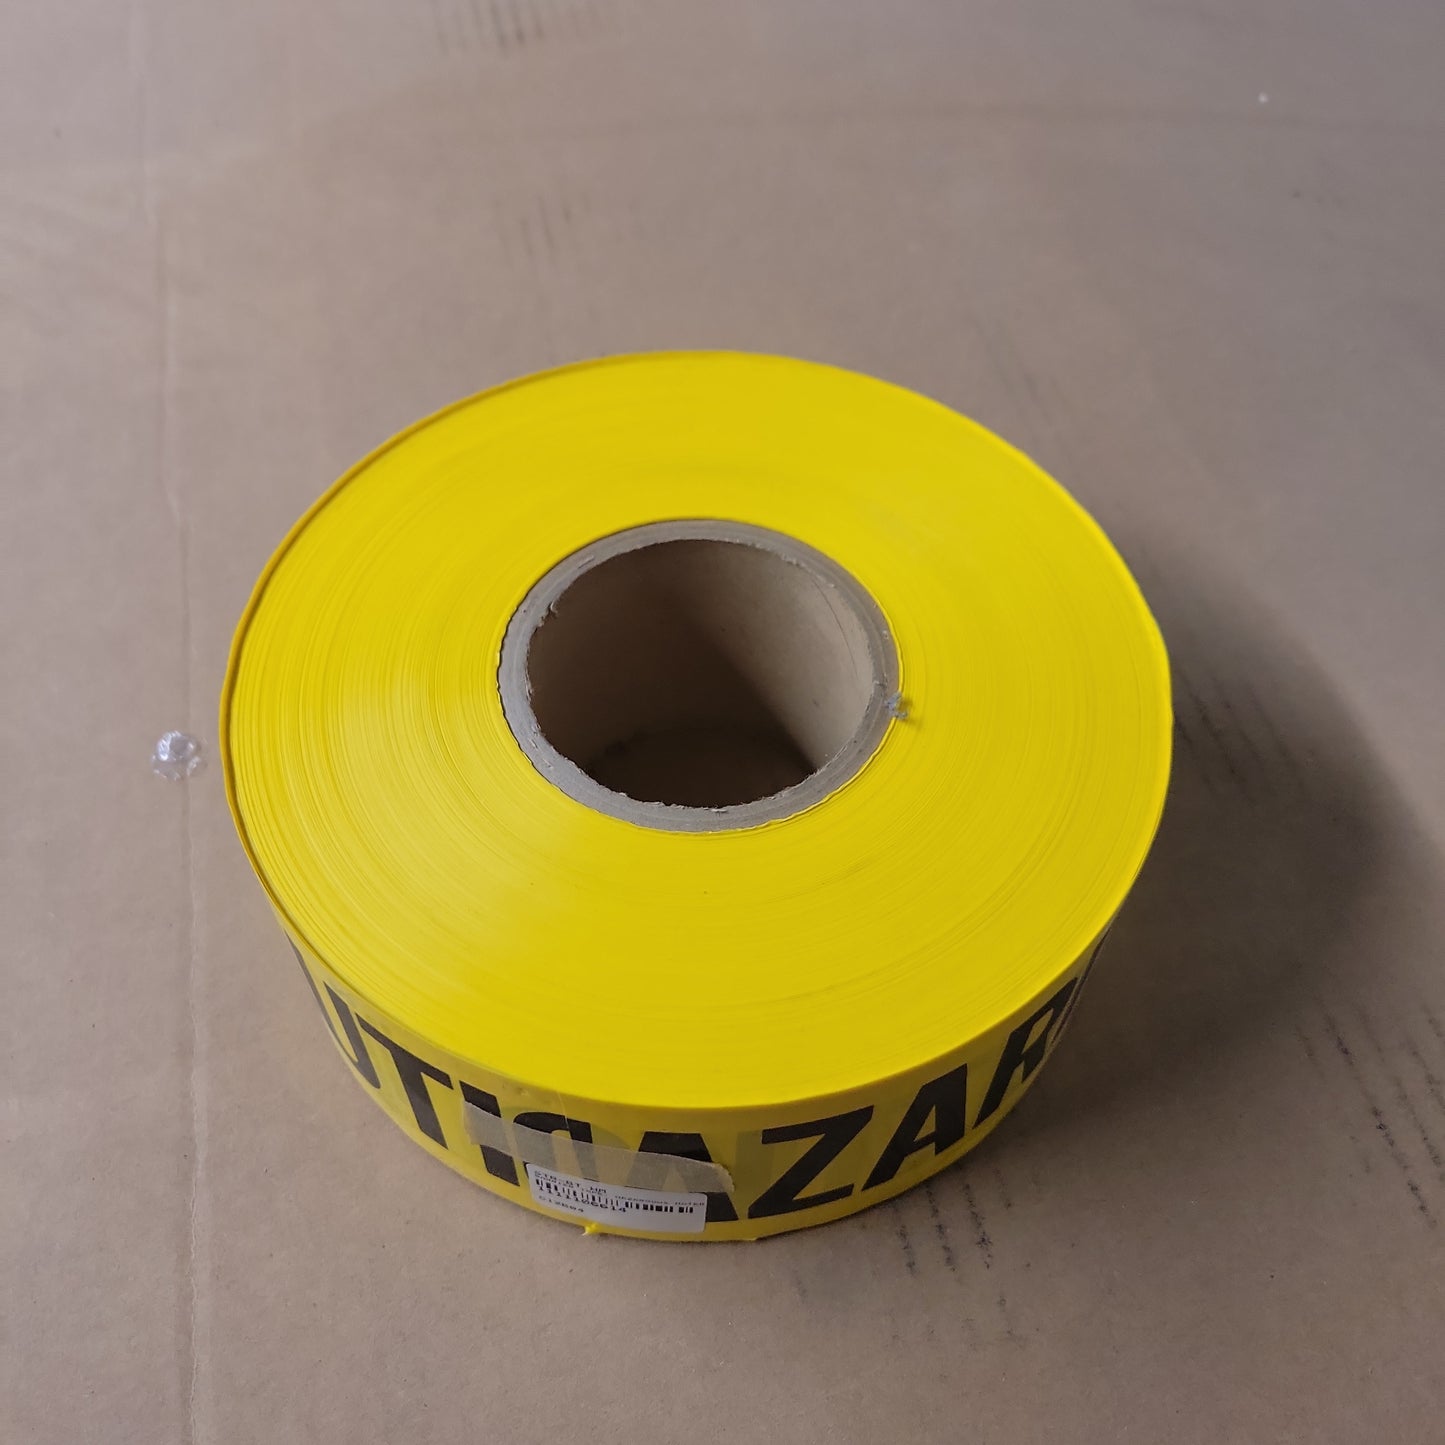 Barrier Tape "HAZARDOUS MATERIALS" 1000' x 3", Yellow B3103Y-HazMat